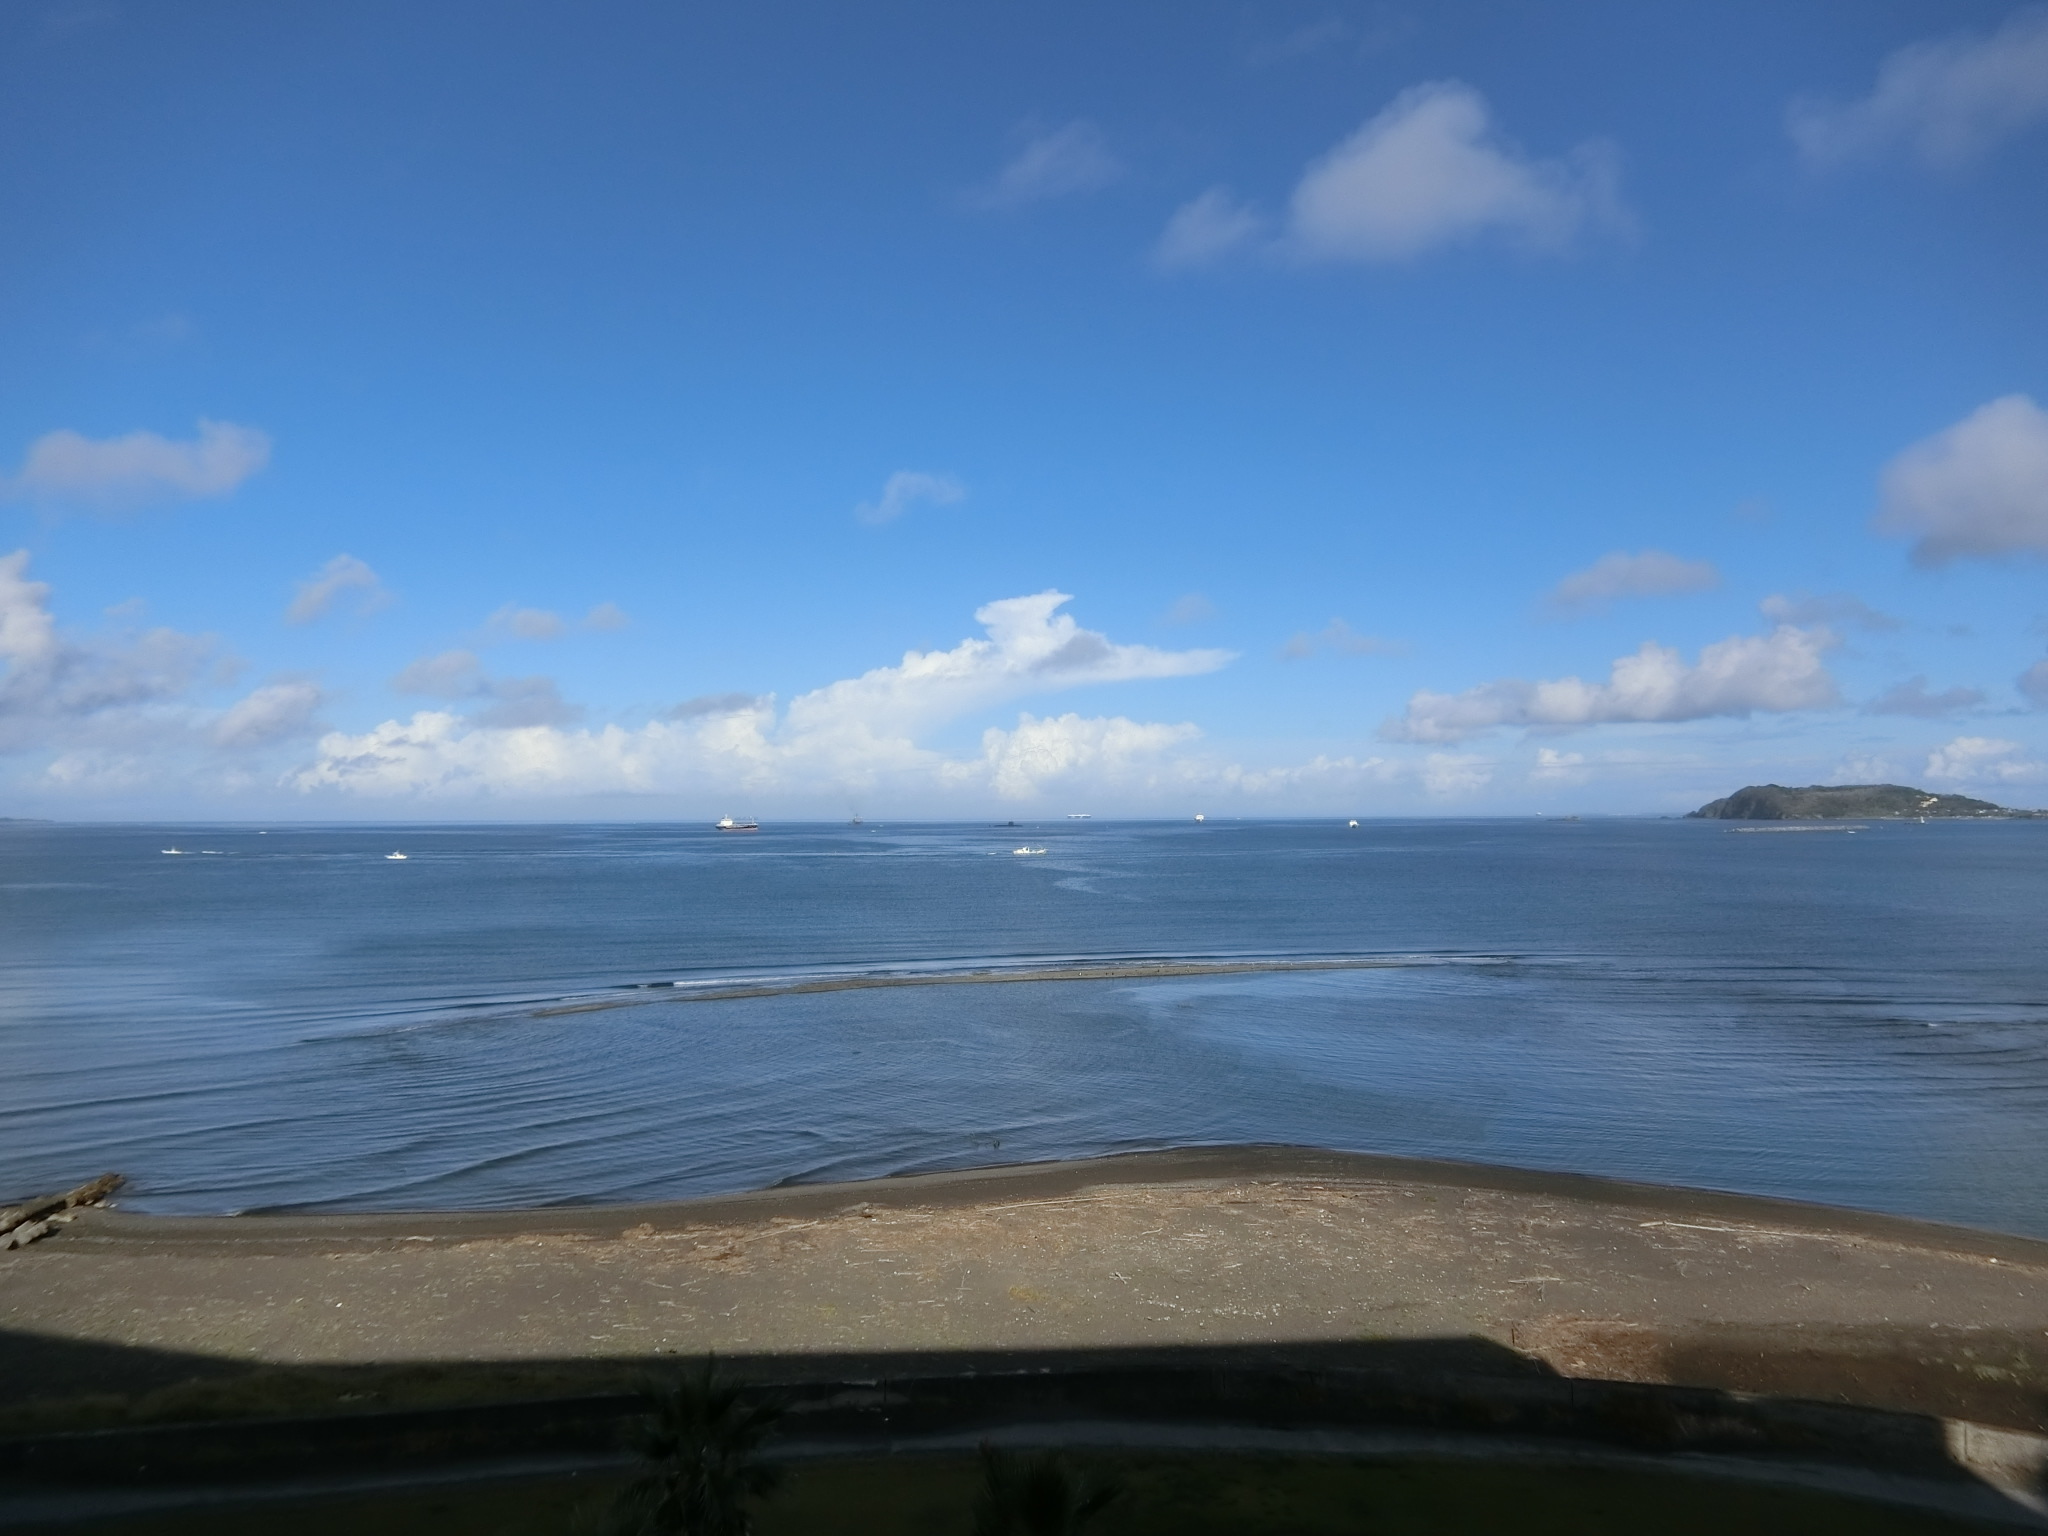 館山便り 館山湾に潜水艦 そして虹 千変万化する海風景 雲はともだち 白い波 青い風